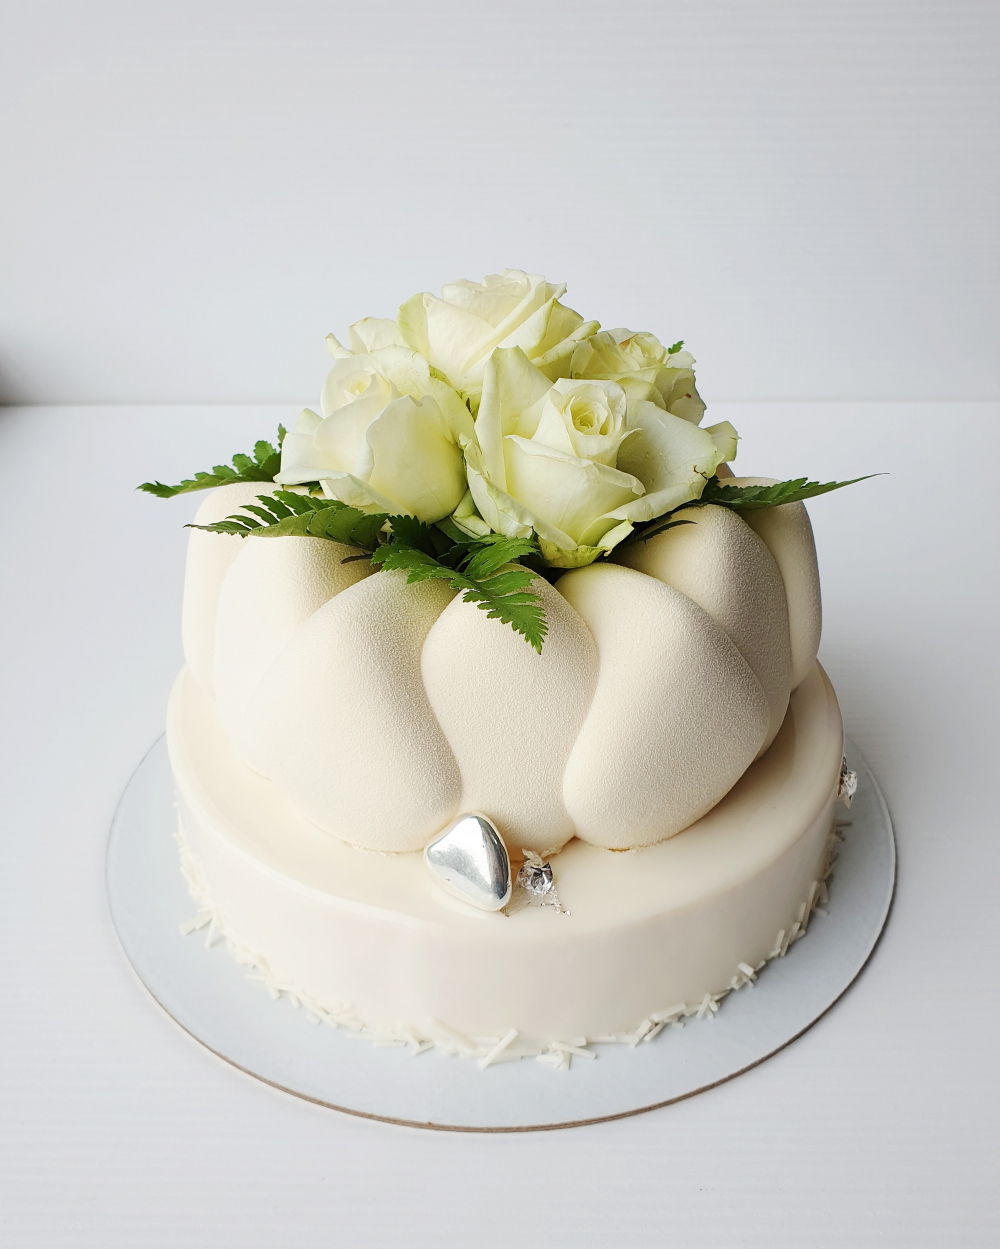 birthday cake, свадебный торт одноярусный, свадебный торт с живыми цветами,  свадебные торты фото одноярусные оригинальные, одноярусный свадебный торт с  живыми цветами, белый торт одноярусный, Свадебный торт Москва